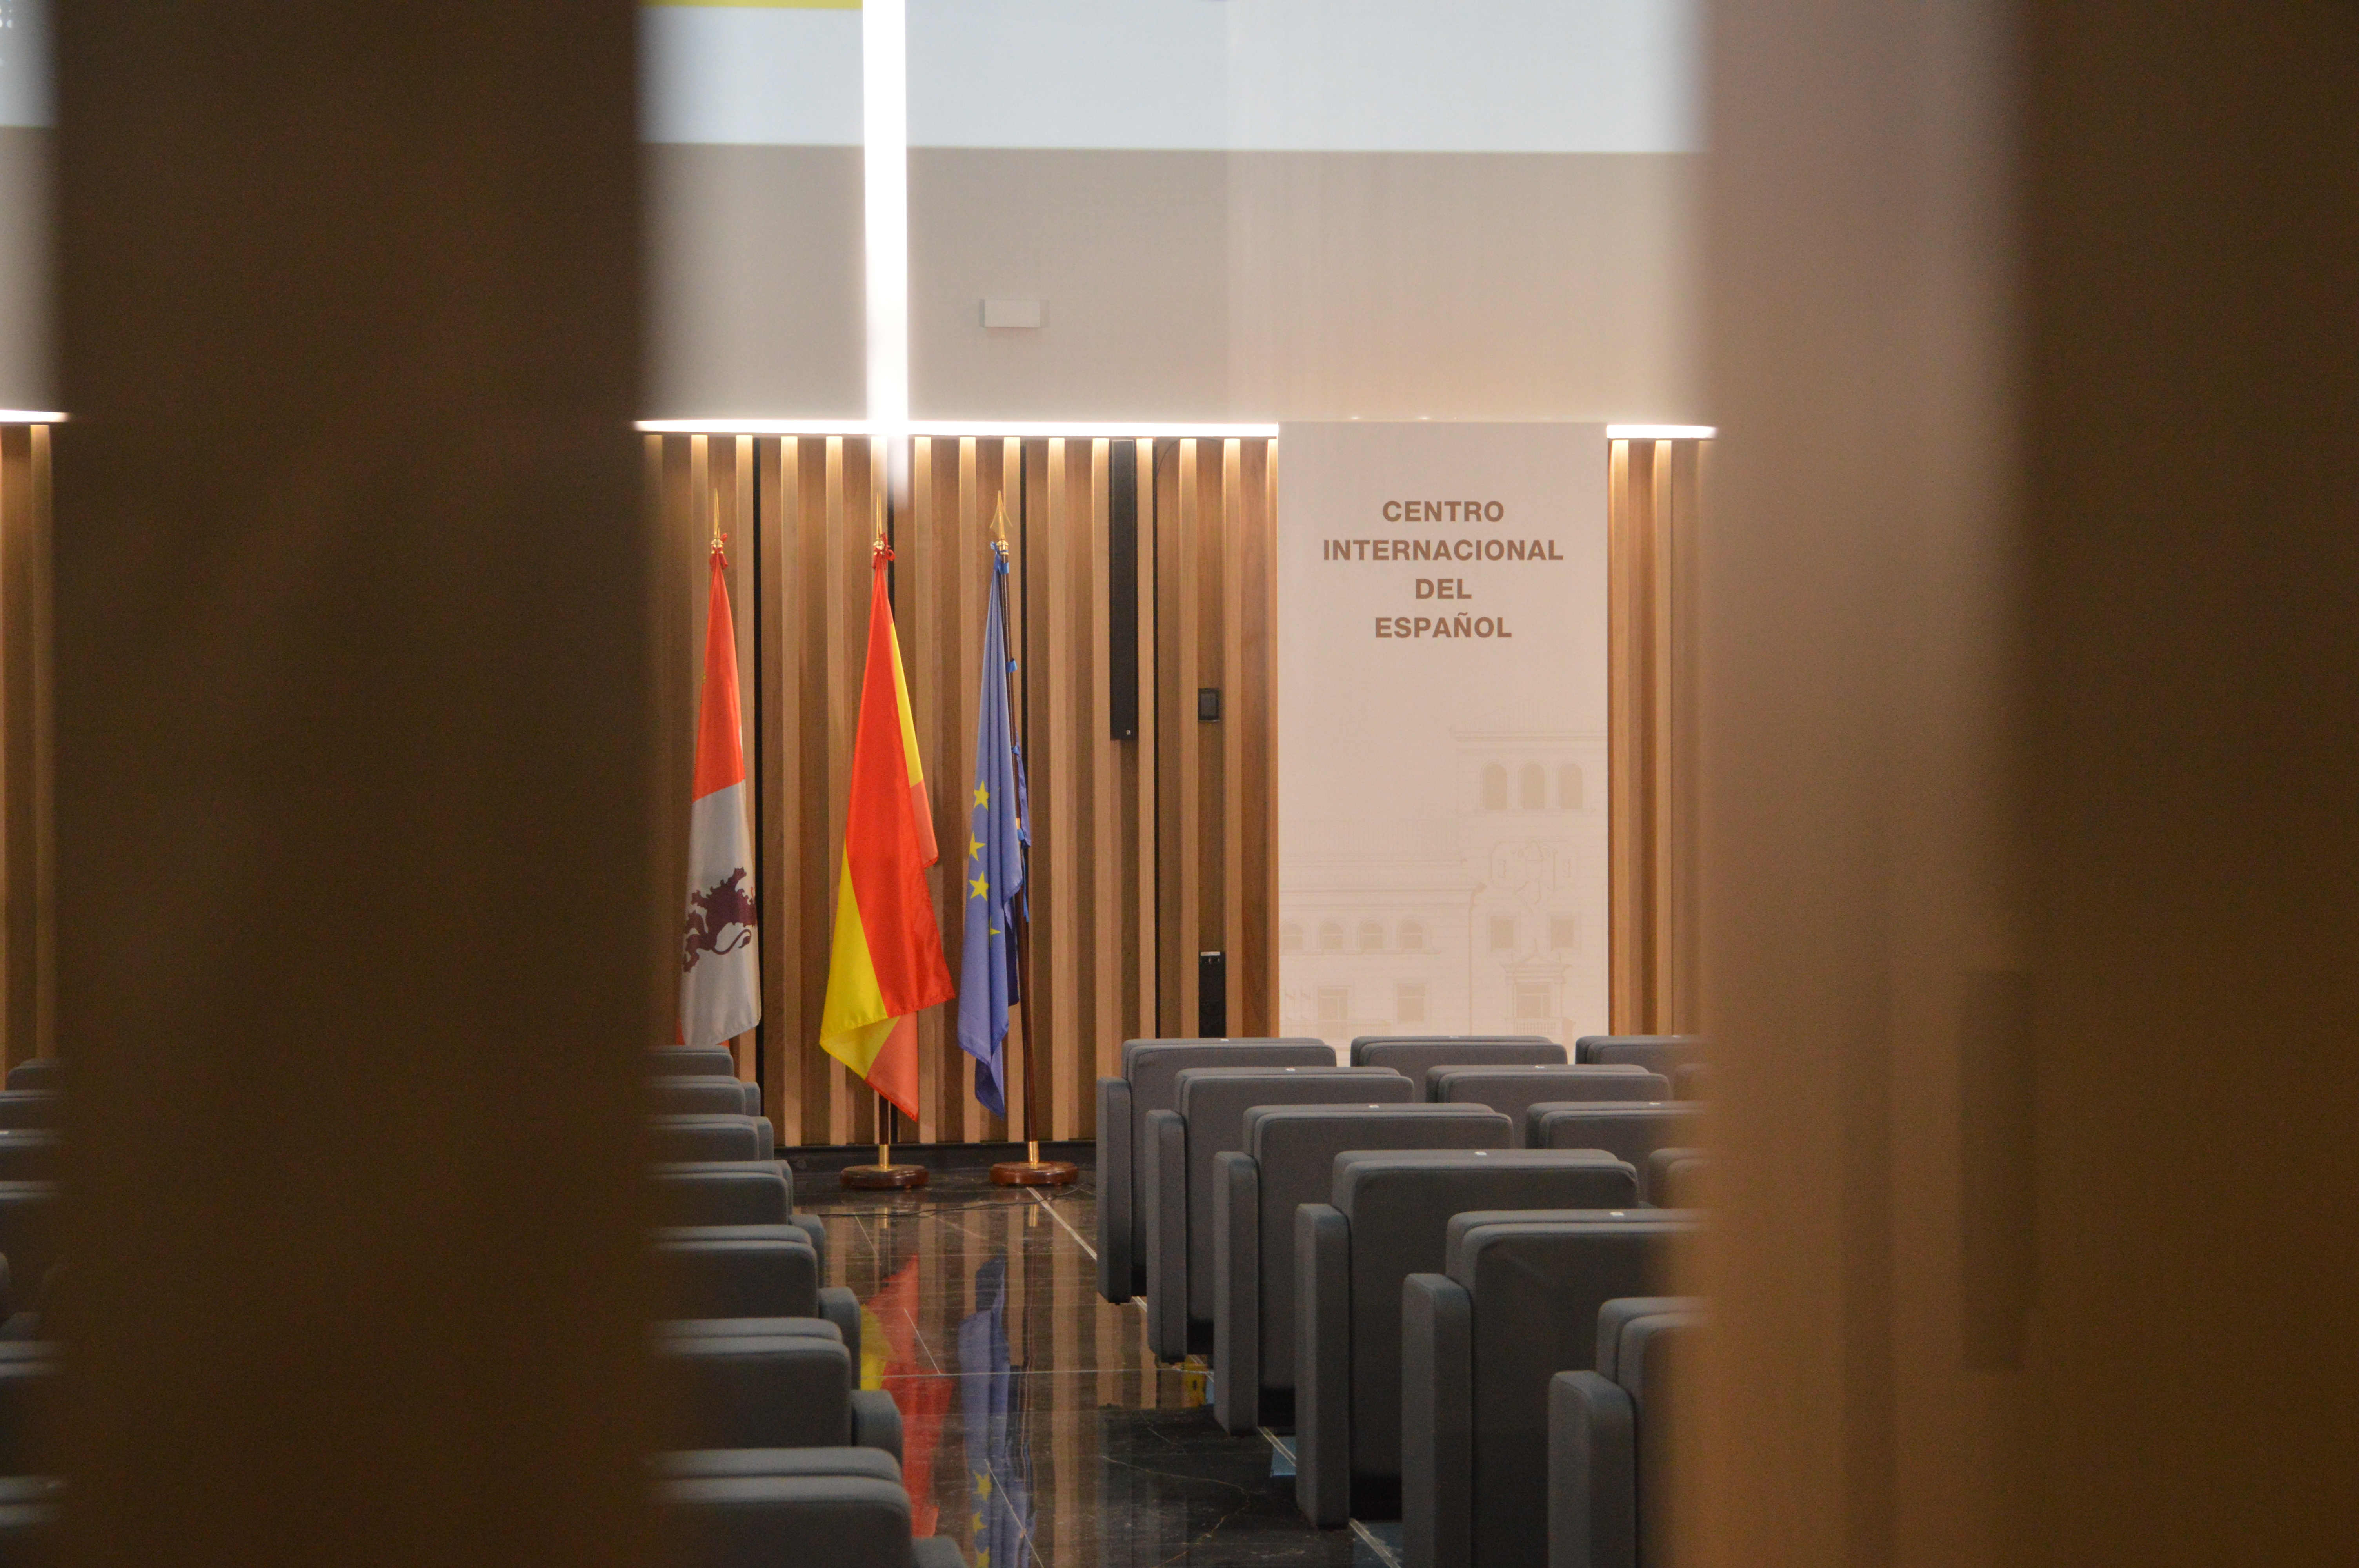 La Universidad de Salamanca programa visitas guiadas para conocer el Centro Internacional del Español